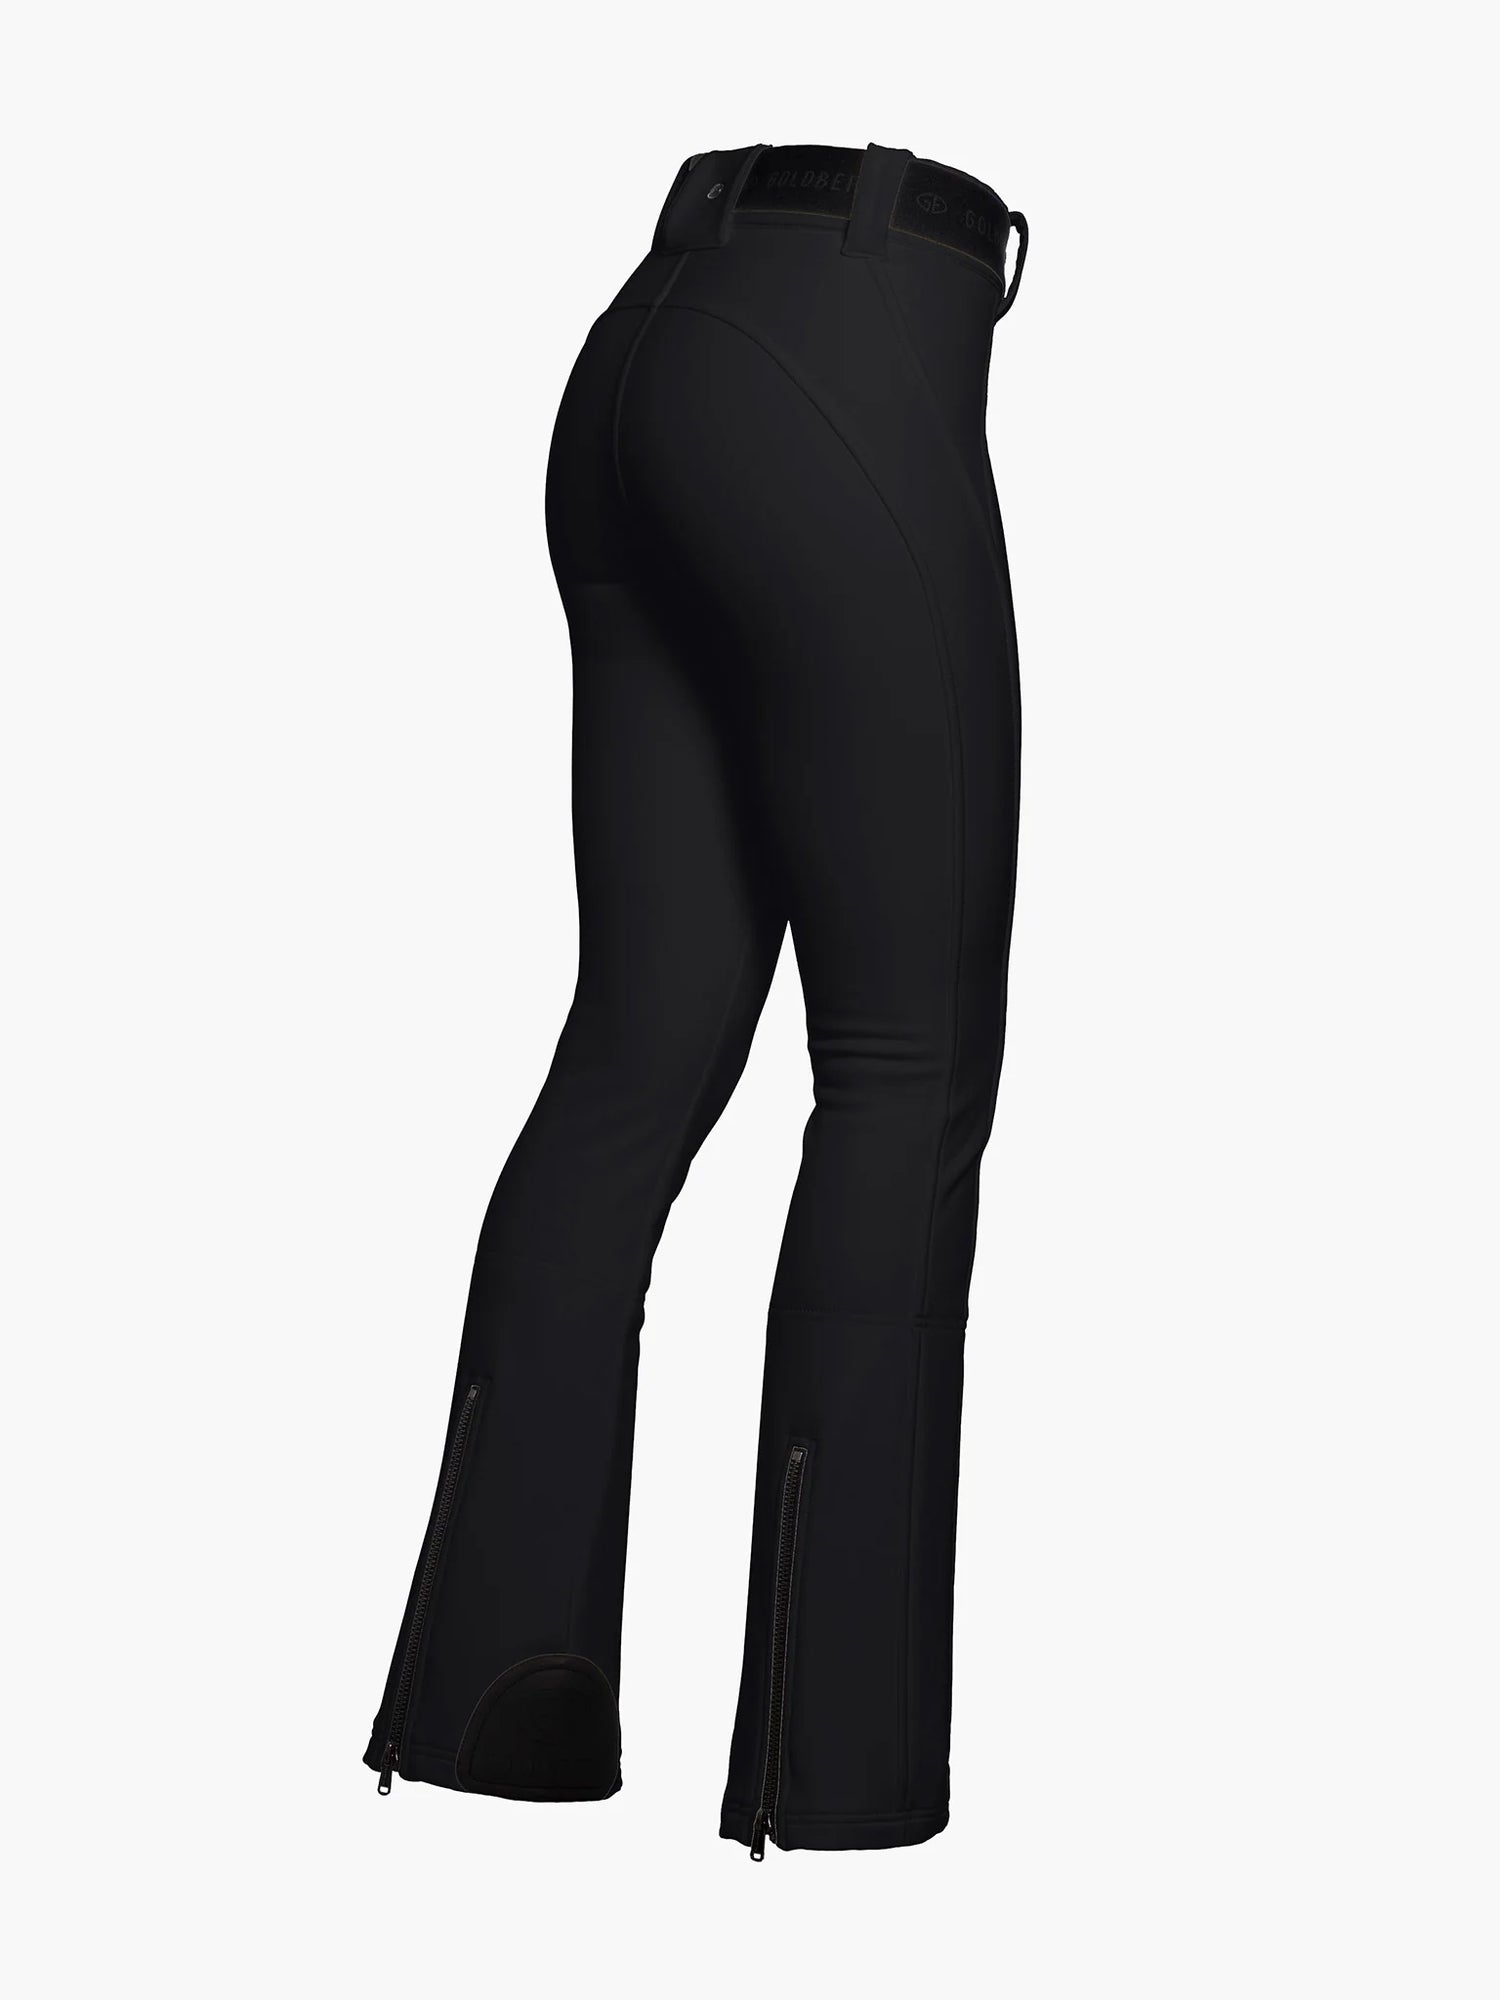 PIPPA ski pants long, black